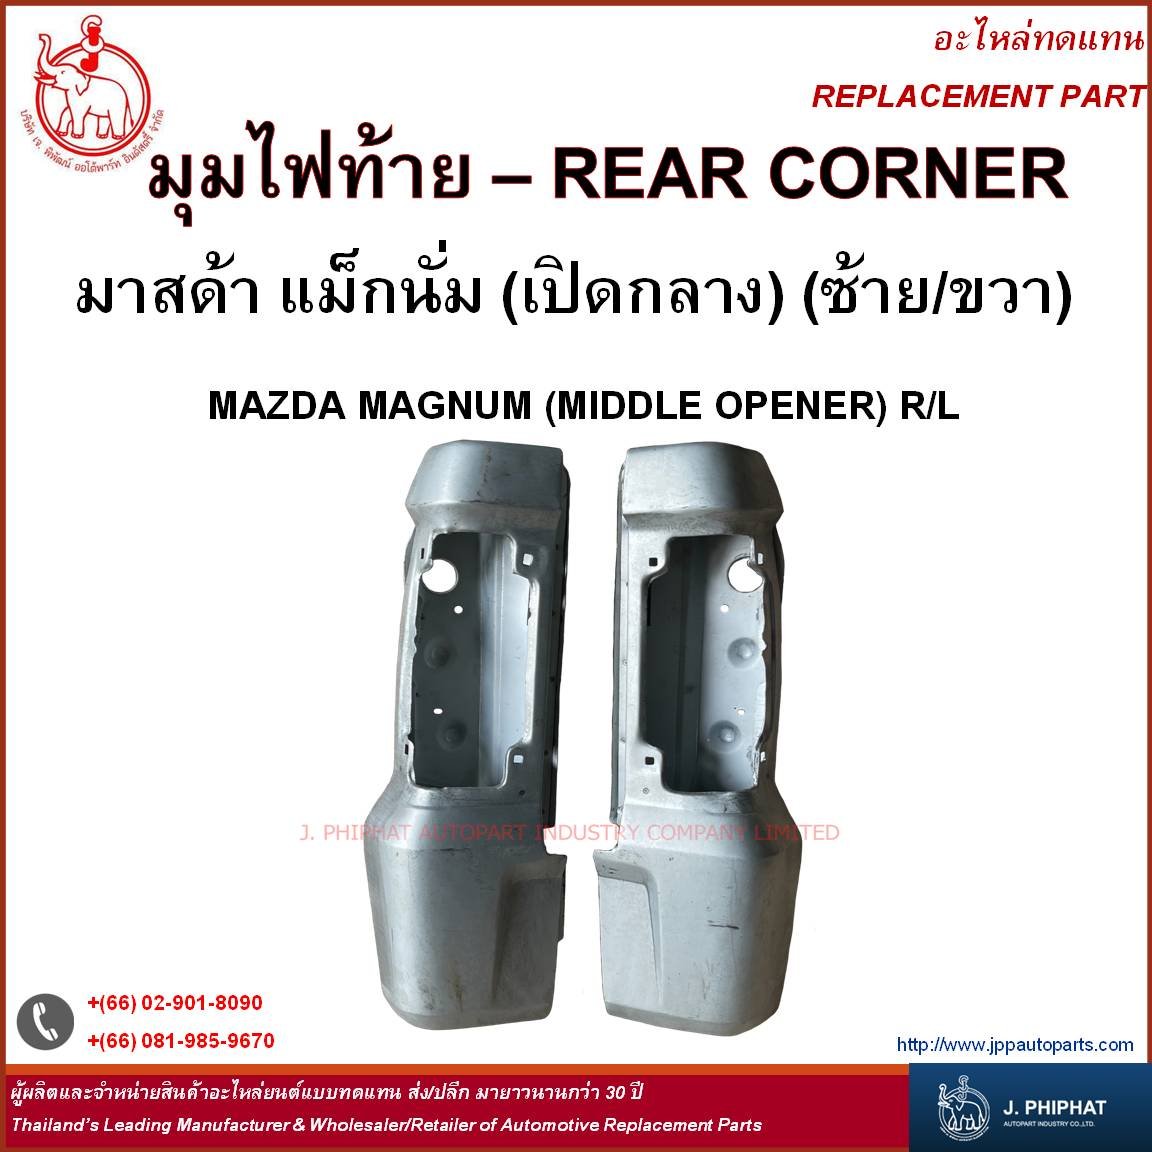 REAR CORNER - MAZDA MAGNUM (MIDDLE OPENER) (R/L)